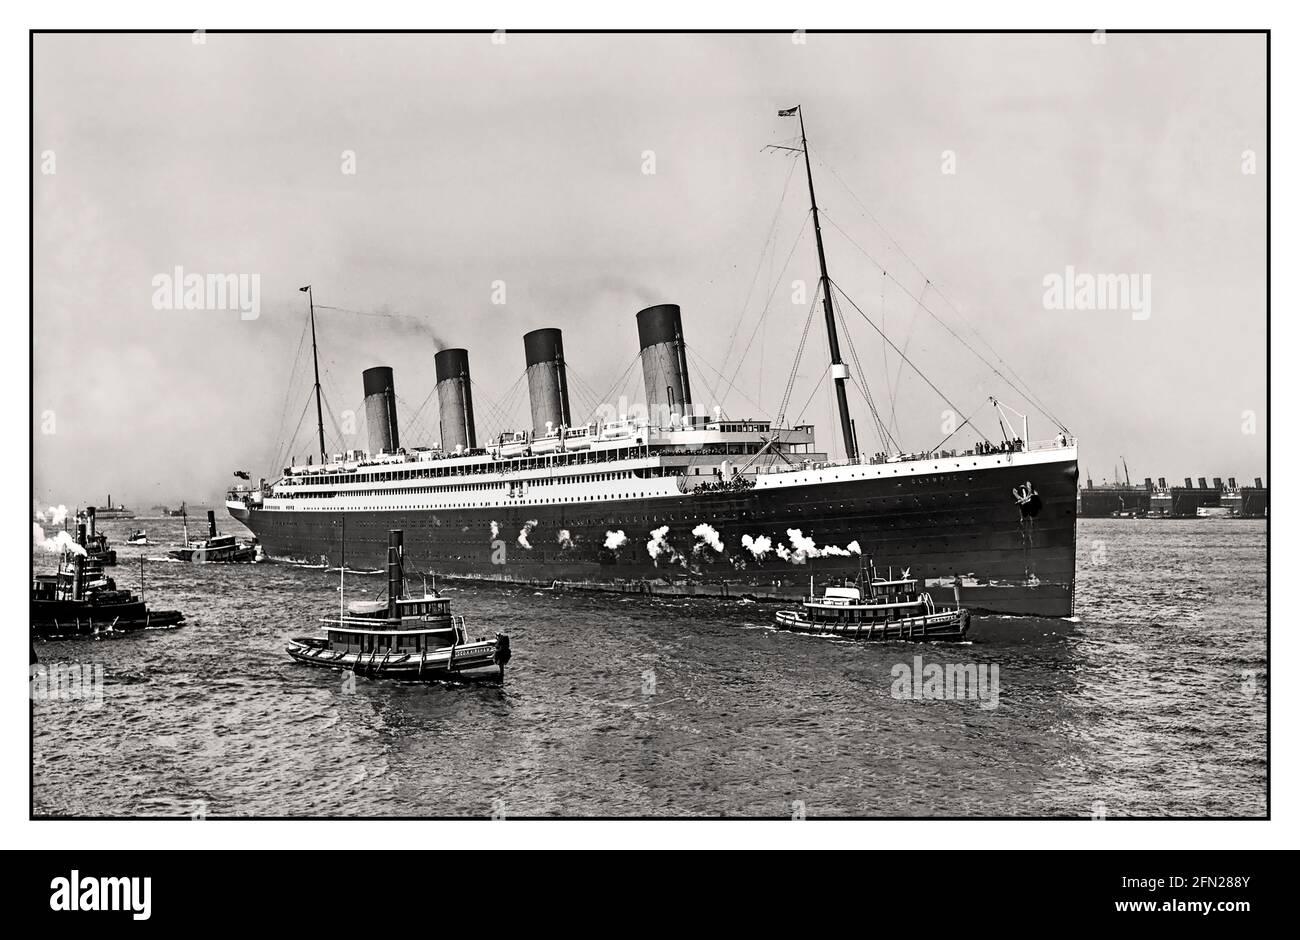 OLYMPIC RMS Olympic del 1900 in arrivo a New York nel suo viaggio inaugurale, il 21 giugno 1911 RMS Olympic è stata una nave britannica di linea oceanica e la nave principale del trio di linee olimpiche della White Star Line. A differenza delle altre navi della classe, Olympic ha avuto una lunga carriera di 24 anni dal 1911 al 1935. Questo includeva il servizio come una compagnia durante la prima guerra mondiale. Nave sorella e quasi identico a RMS Titanic Foto Stock